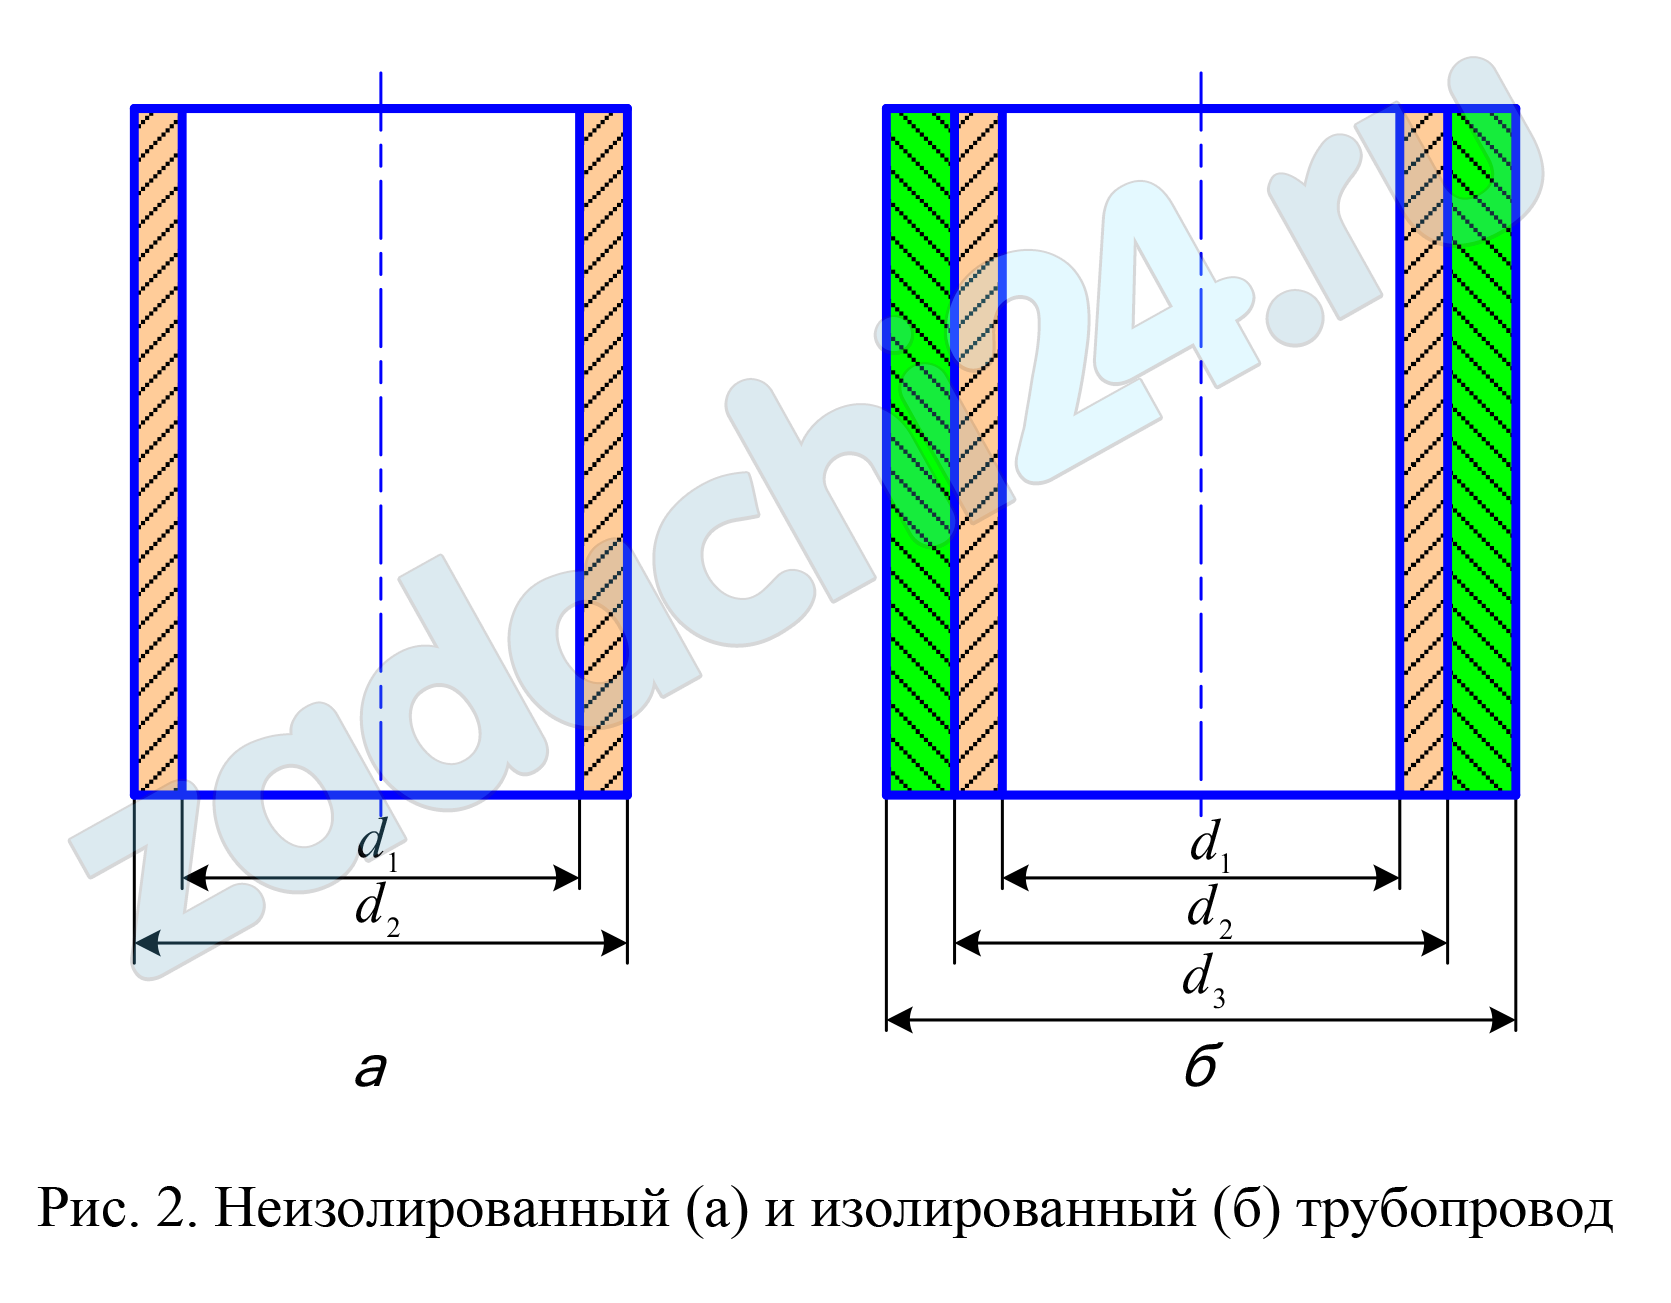 Во сколько раз уменьшатся потери теплоты излучением в окружающую среду от изолированного паропровода длиной 1 м по сравнению с неизолированным (рис. 2), если: внутренний диаметр трубопровода d1; наружный диаметр трубопровода d2; диаметр изолированного трубопровода d3; степень черноты трубопровода εт; степень черноты поверхности теплоизоляционного слоя εти; температура поверхности теплоизоляционного слоя tти; температура поверхности трубопровода tт.